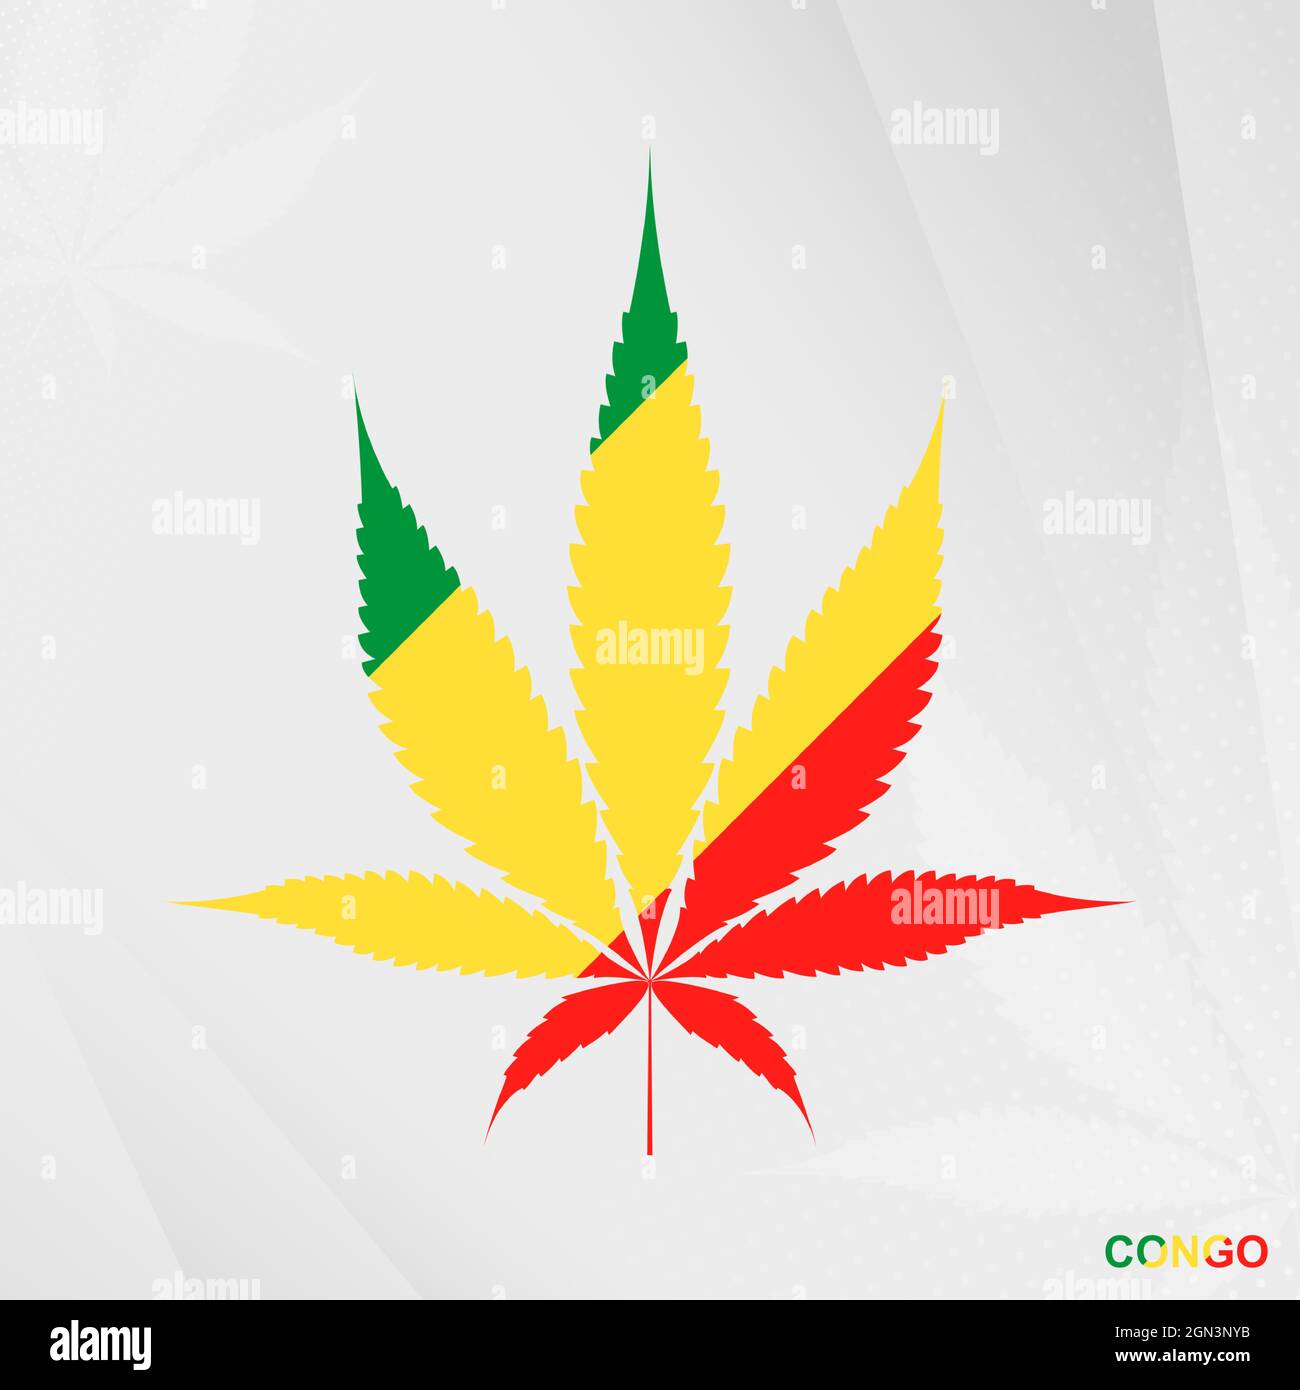 Drapeau du Congo en forme de feuille de marijuana. Le concept de légalisation le cannabis au Congo. Illustration de cannabis médical. Illustration de Vecteur